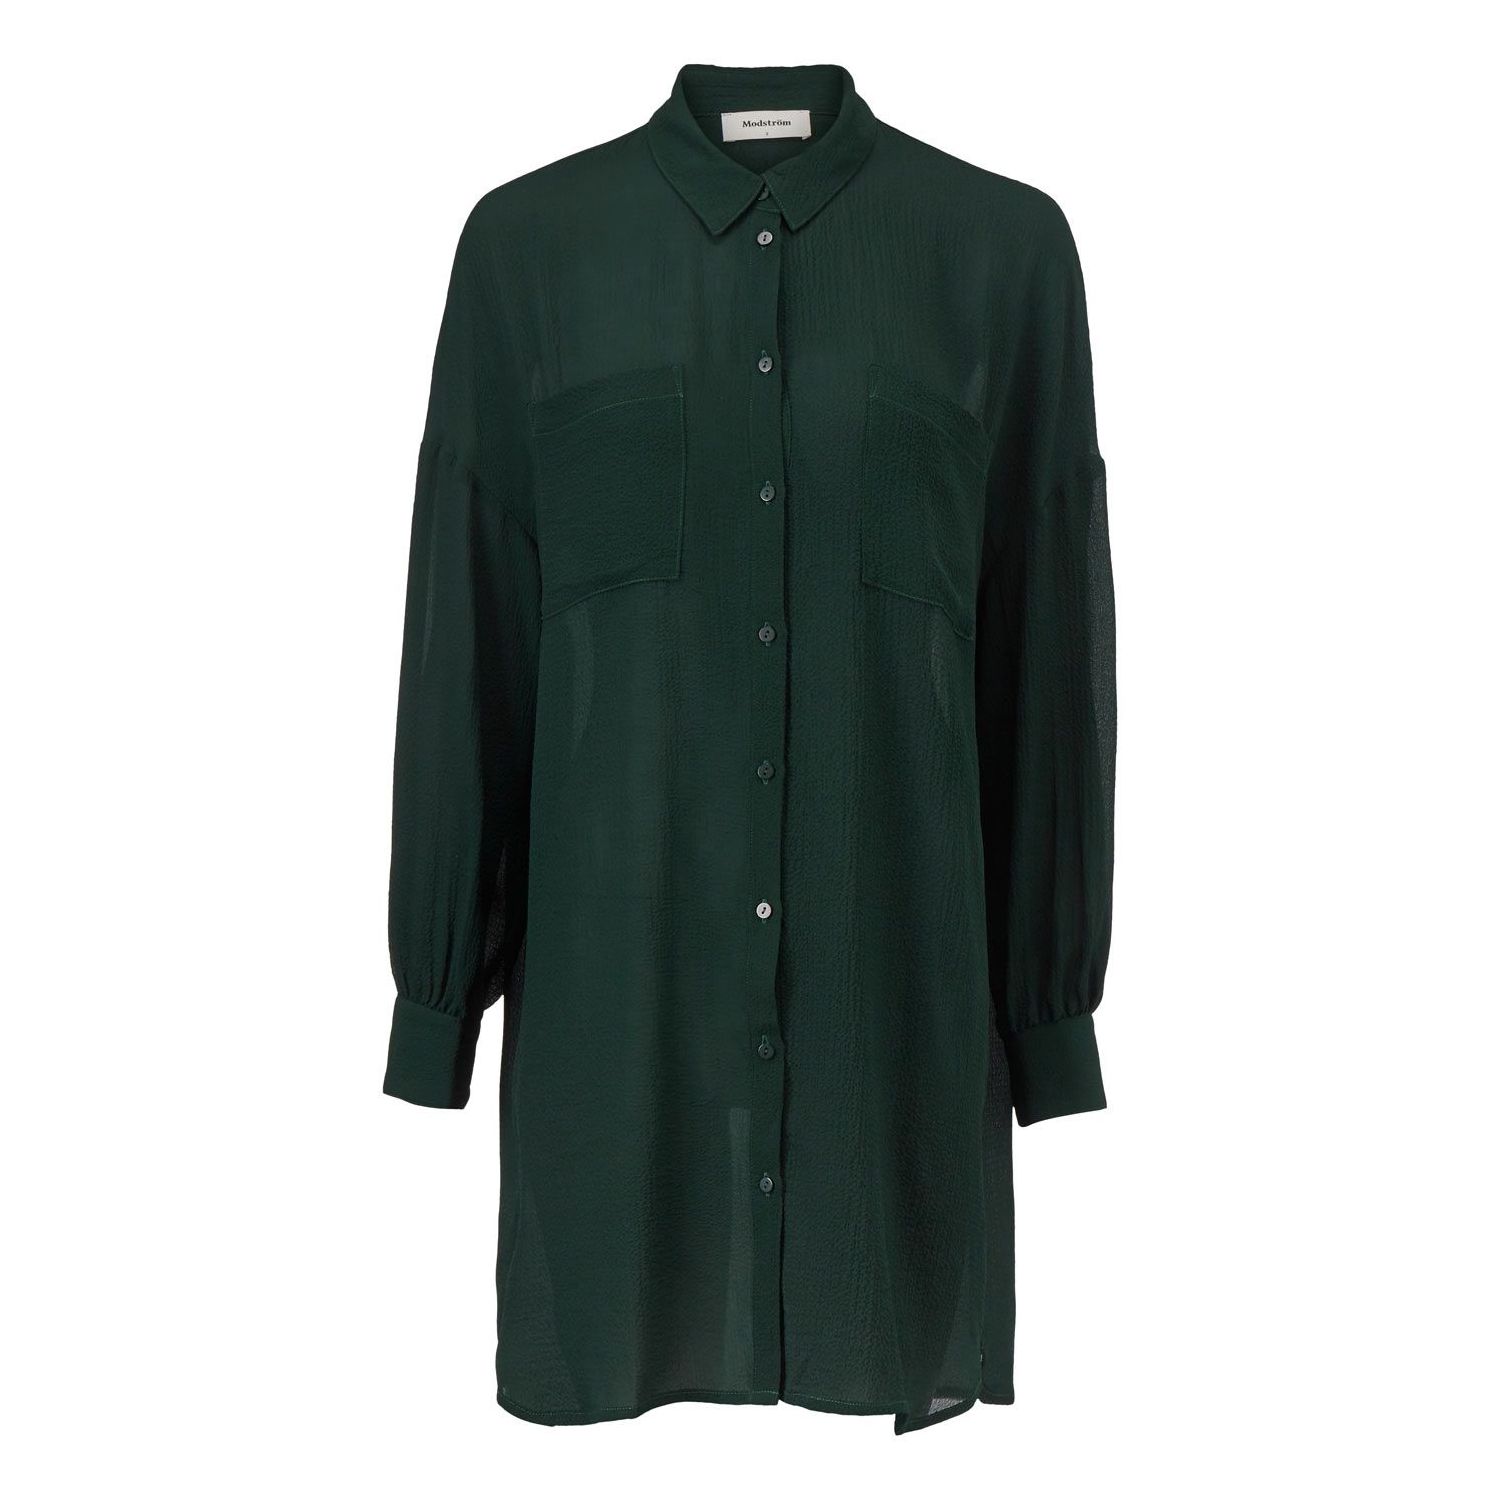 Modstrom forest shirt empire green